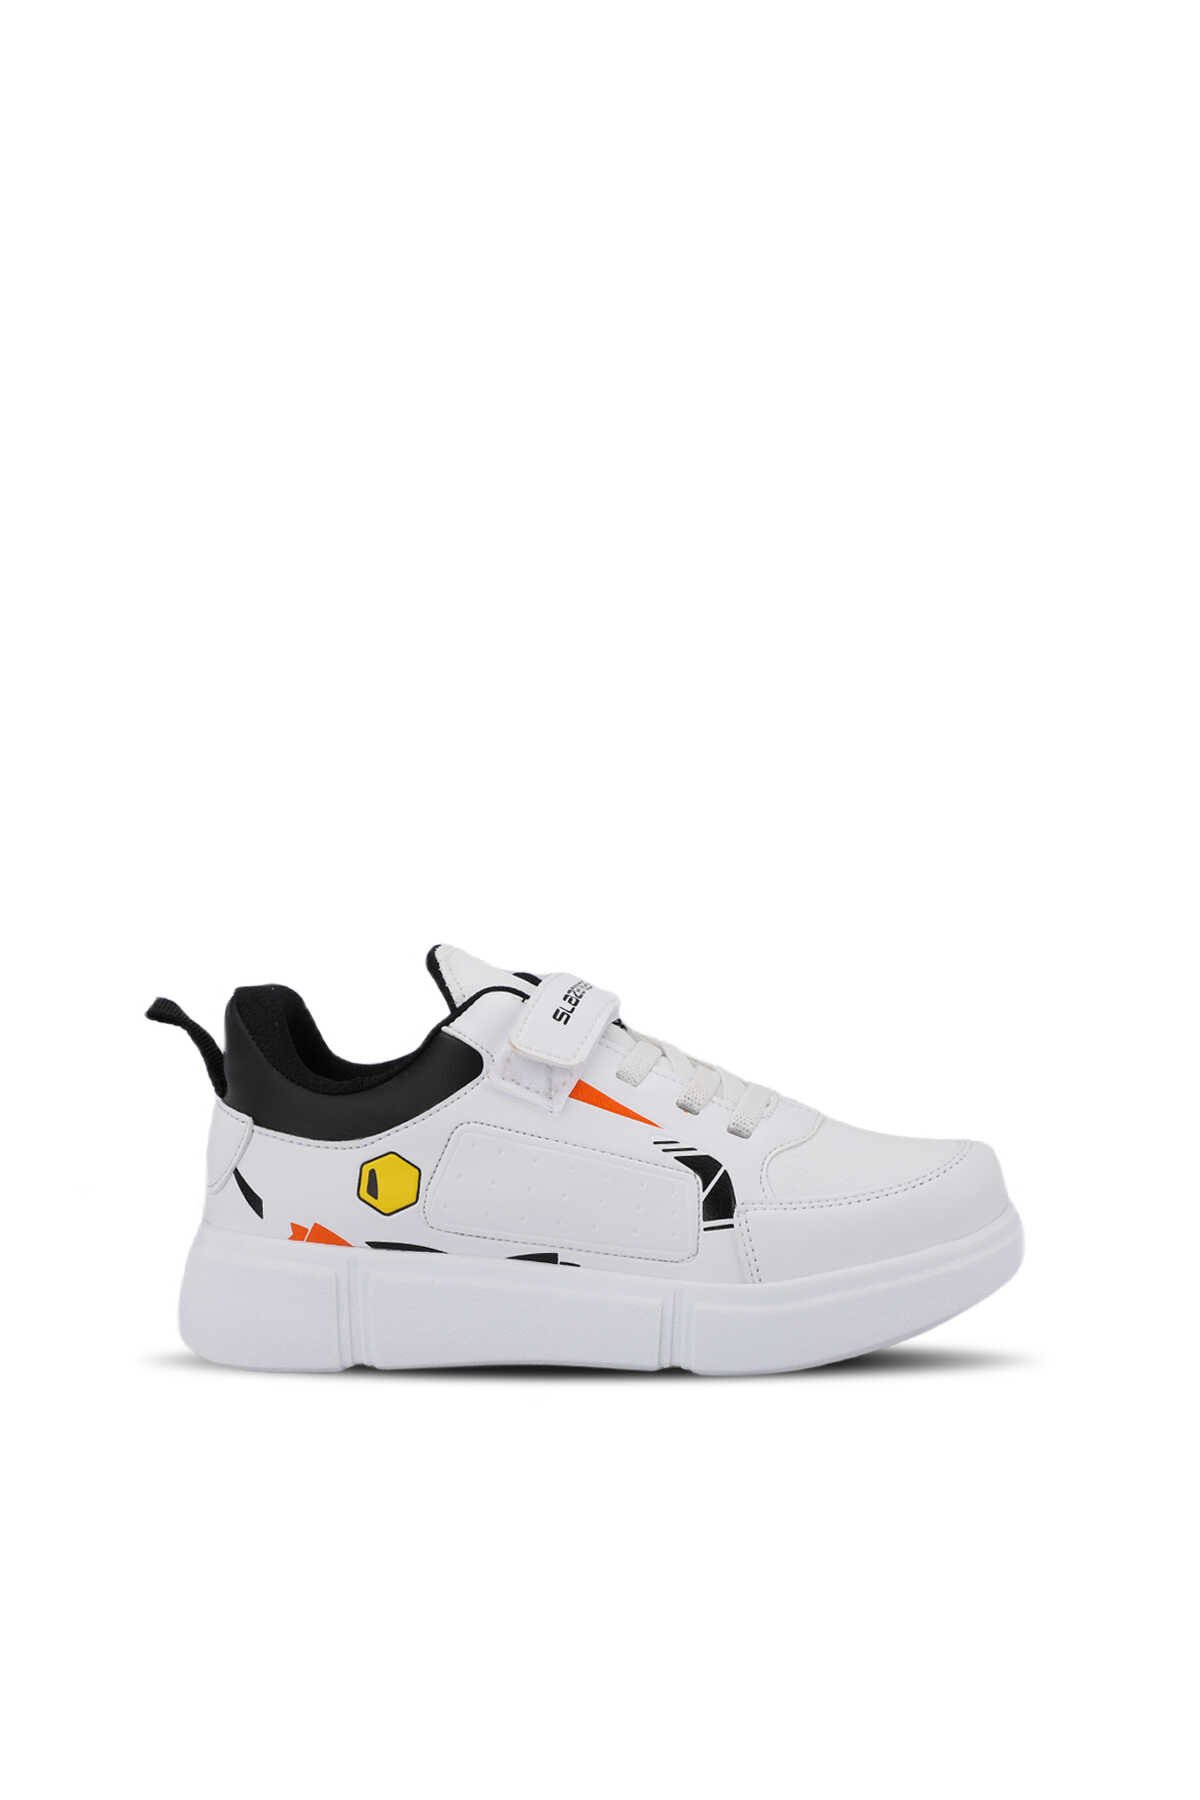 Slazenger - KEPA KTN Sneaker Erkek Çocuk Ayakkabı Beyaz / Siyah